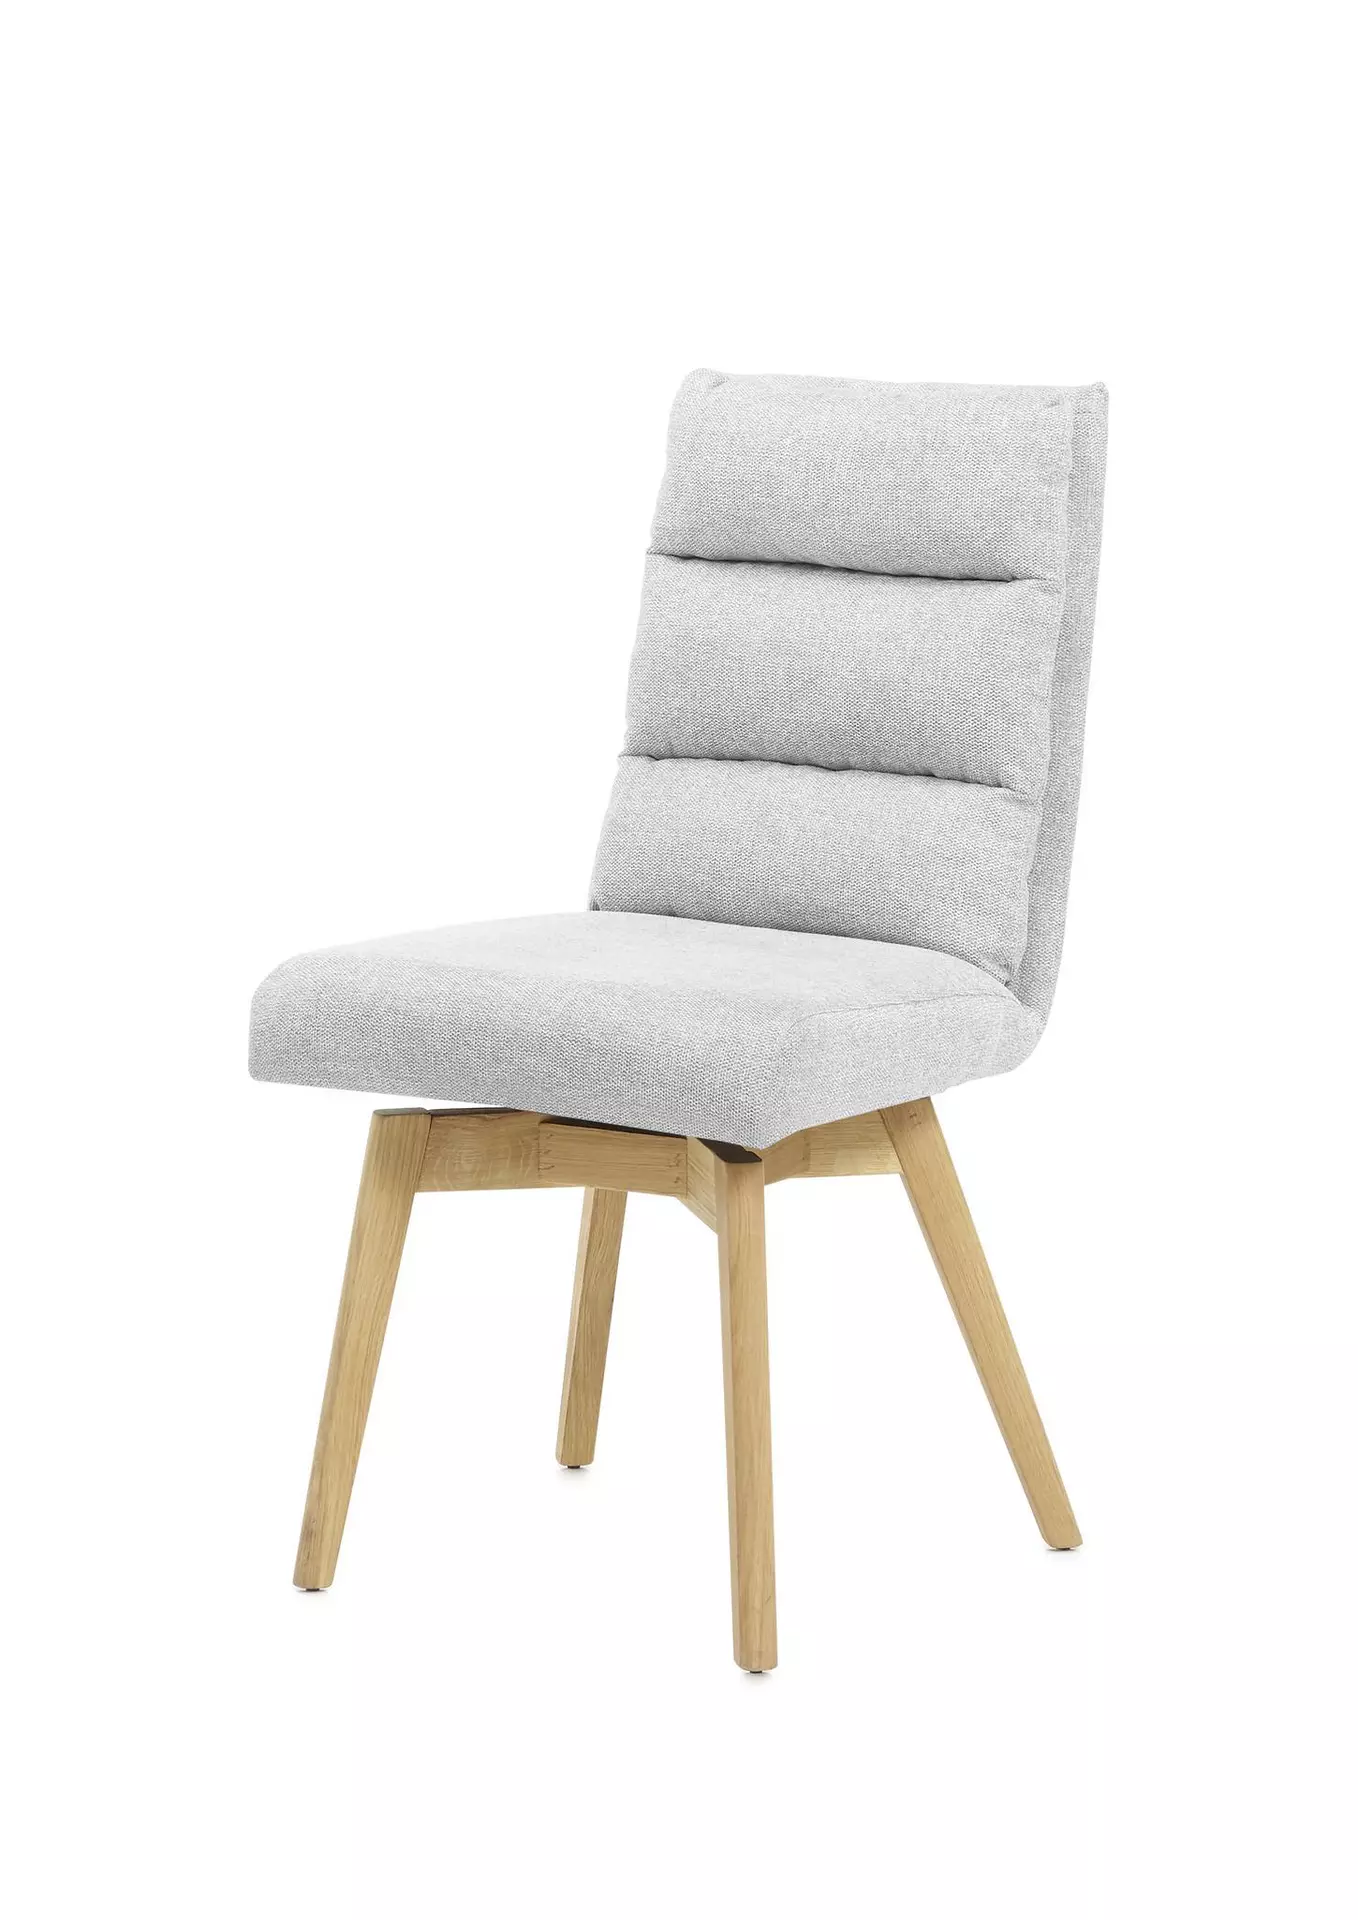 Stuhl Holz MCA furniture | Inhofer Möbel